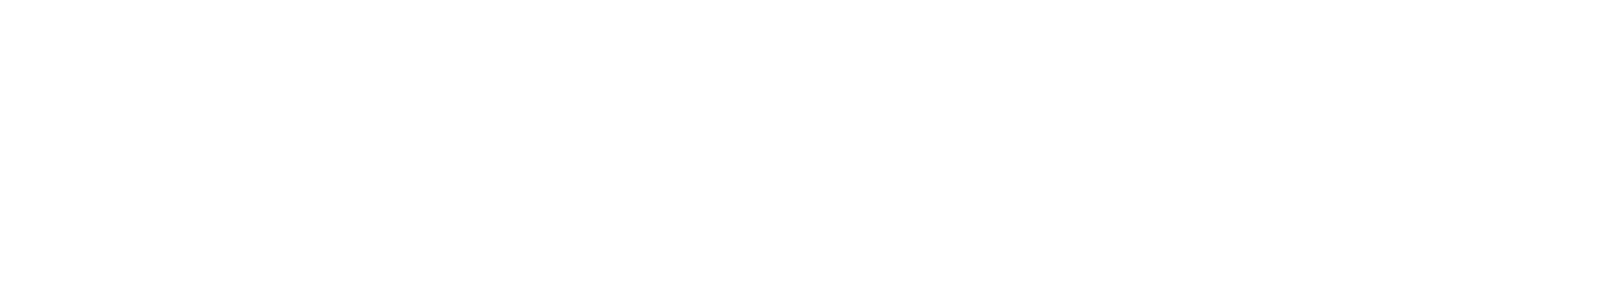 Pino-Global-Enter-Ctr-hrz-bw-rev